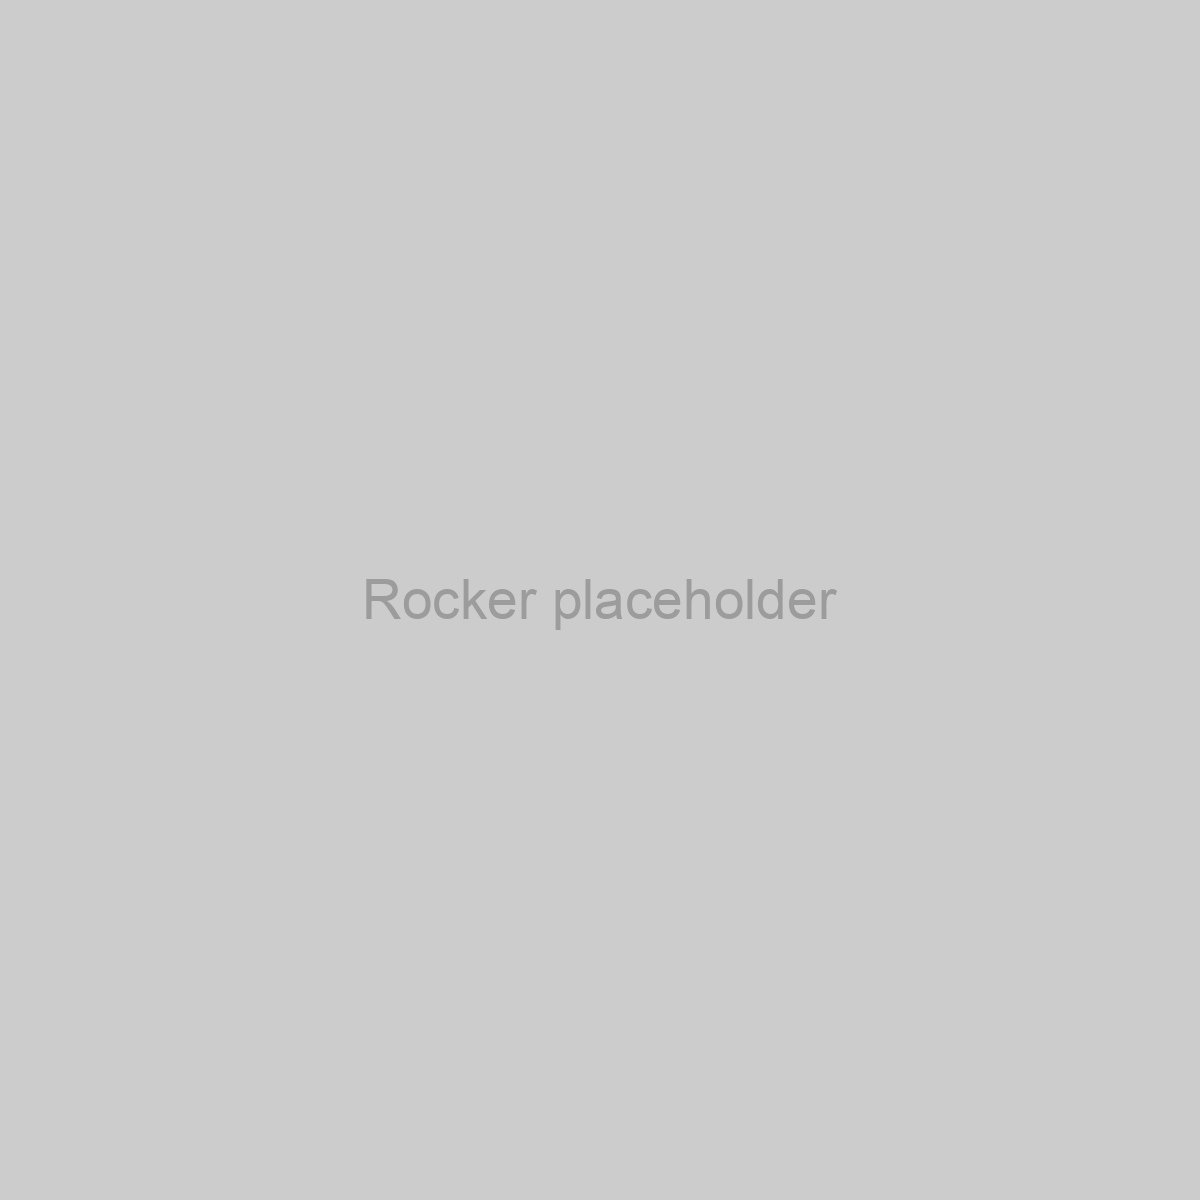 Rocker Placeholder Image